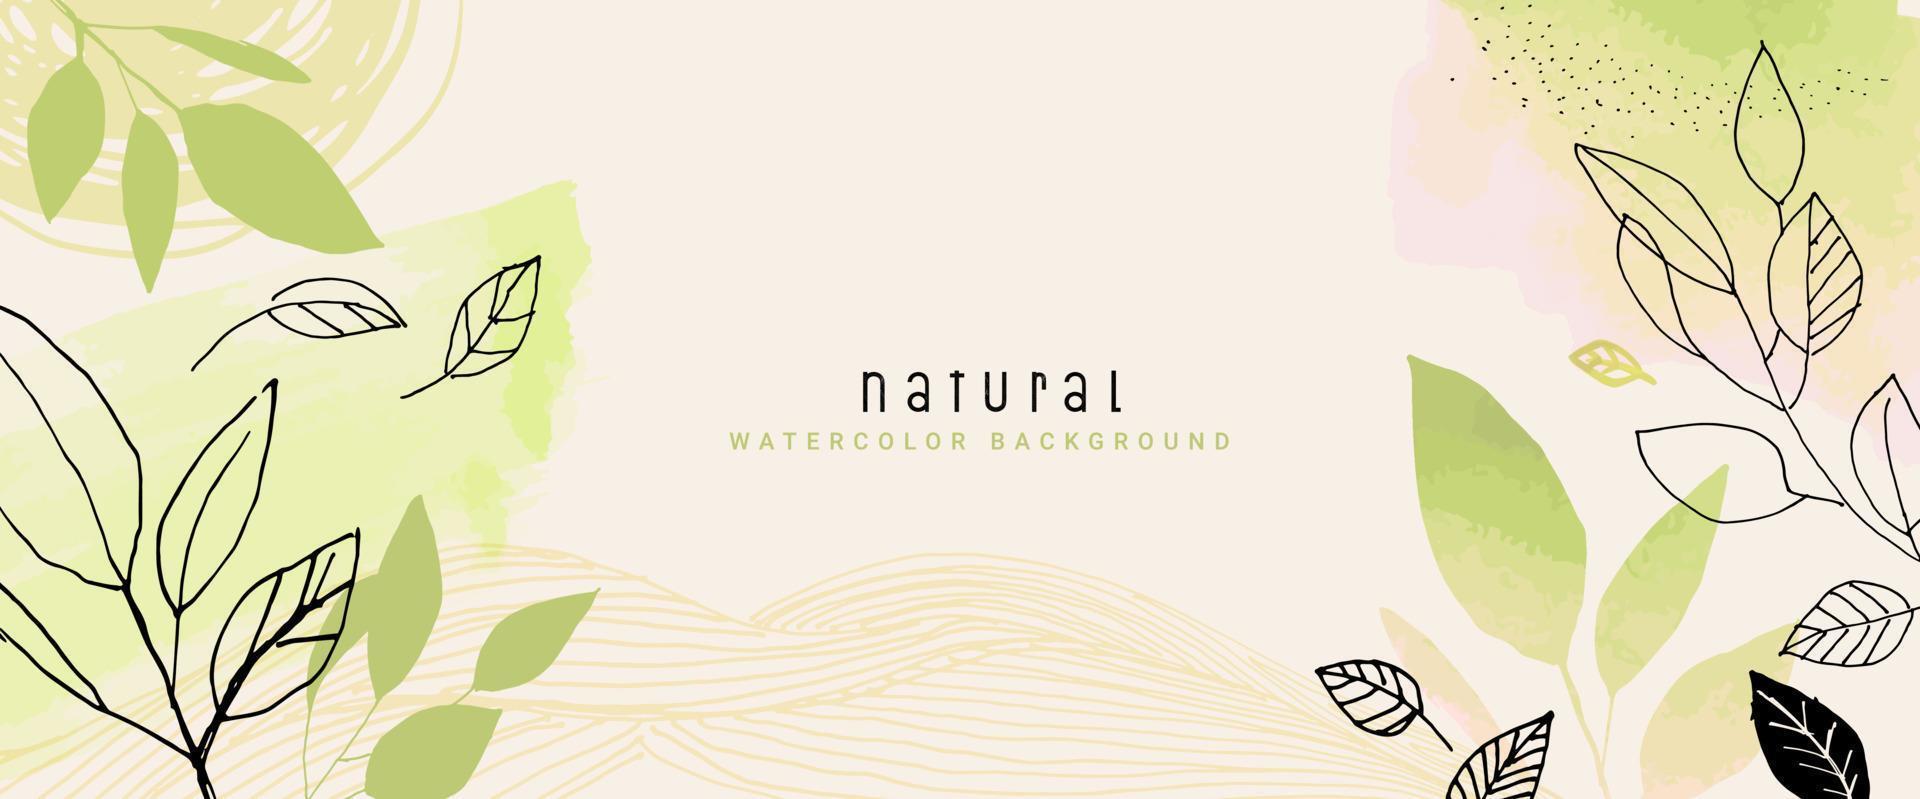 natuurlijke aquarel vector achtergrond voor grafisch en webdesign, bedrijfspresentatie, marketing. handgetekende illustratie voor natuurlijke en biologische producten, beauty en mode, cosmetica en wellness.